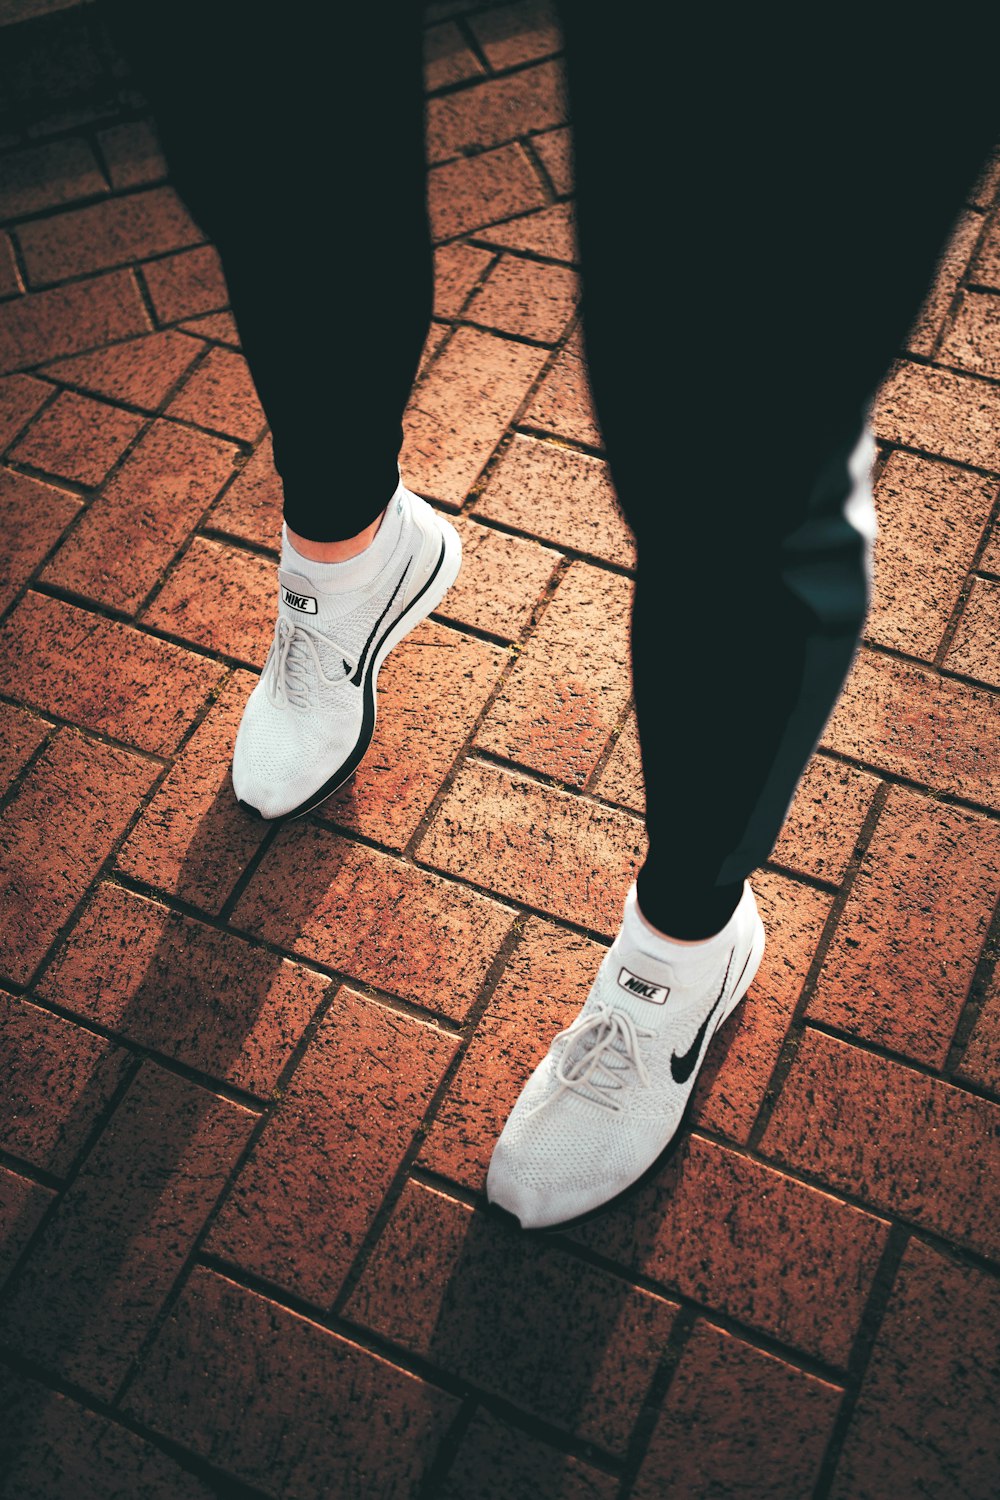 persona con pantalones negros y zapatillas nike blancas – Imagen Coventry gratis en Unsplash